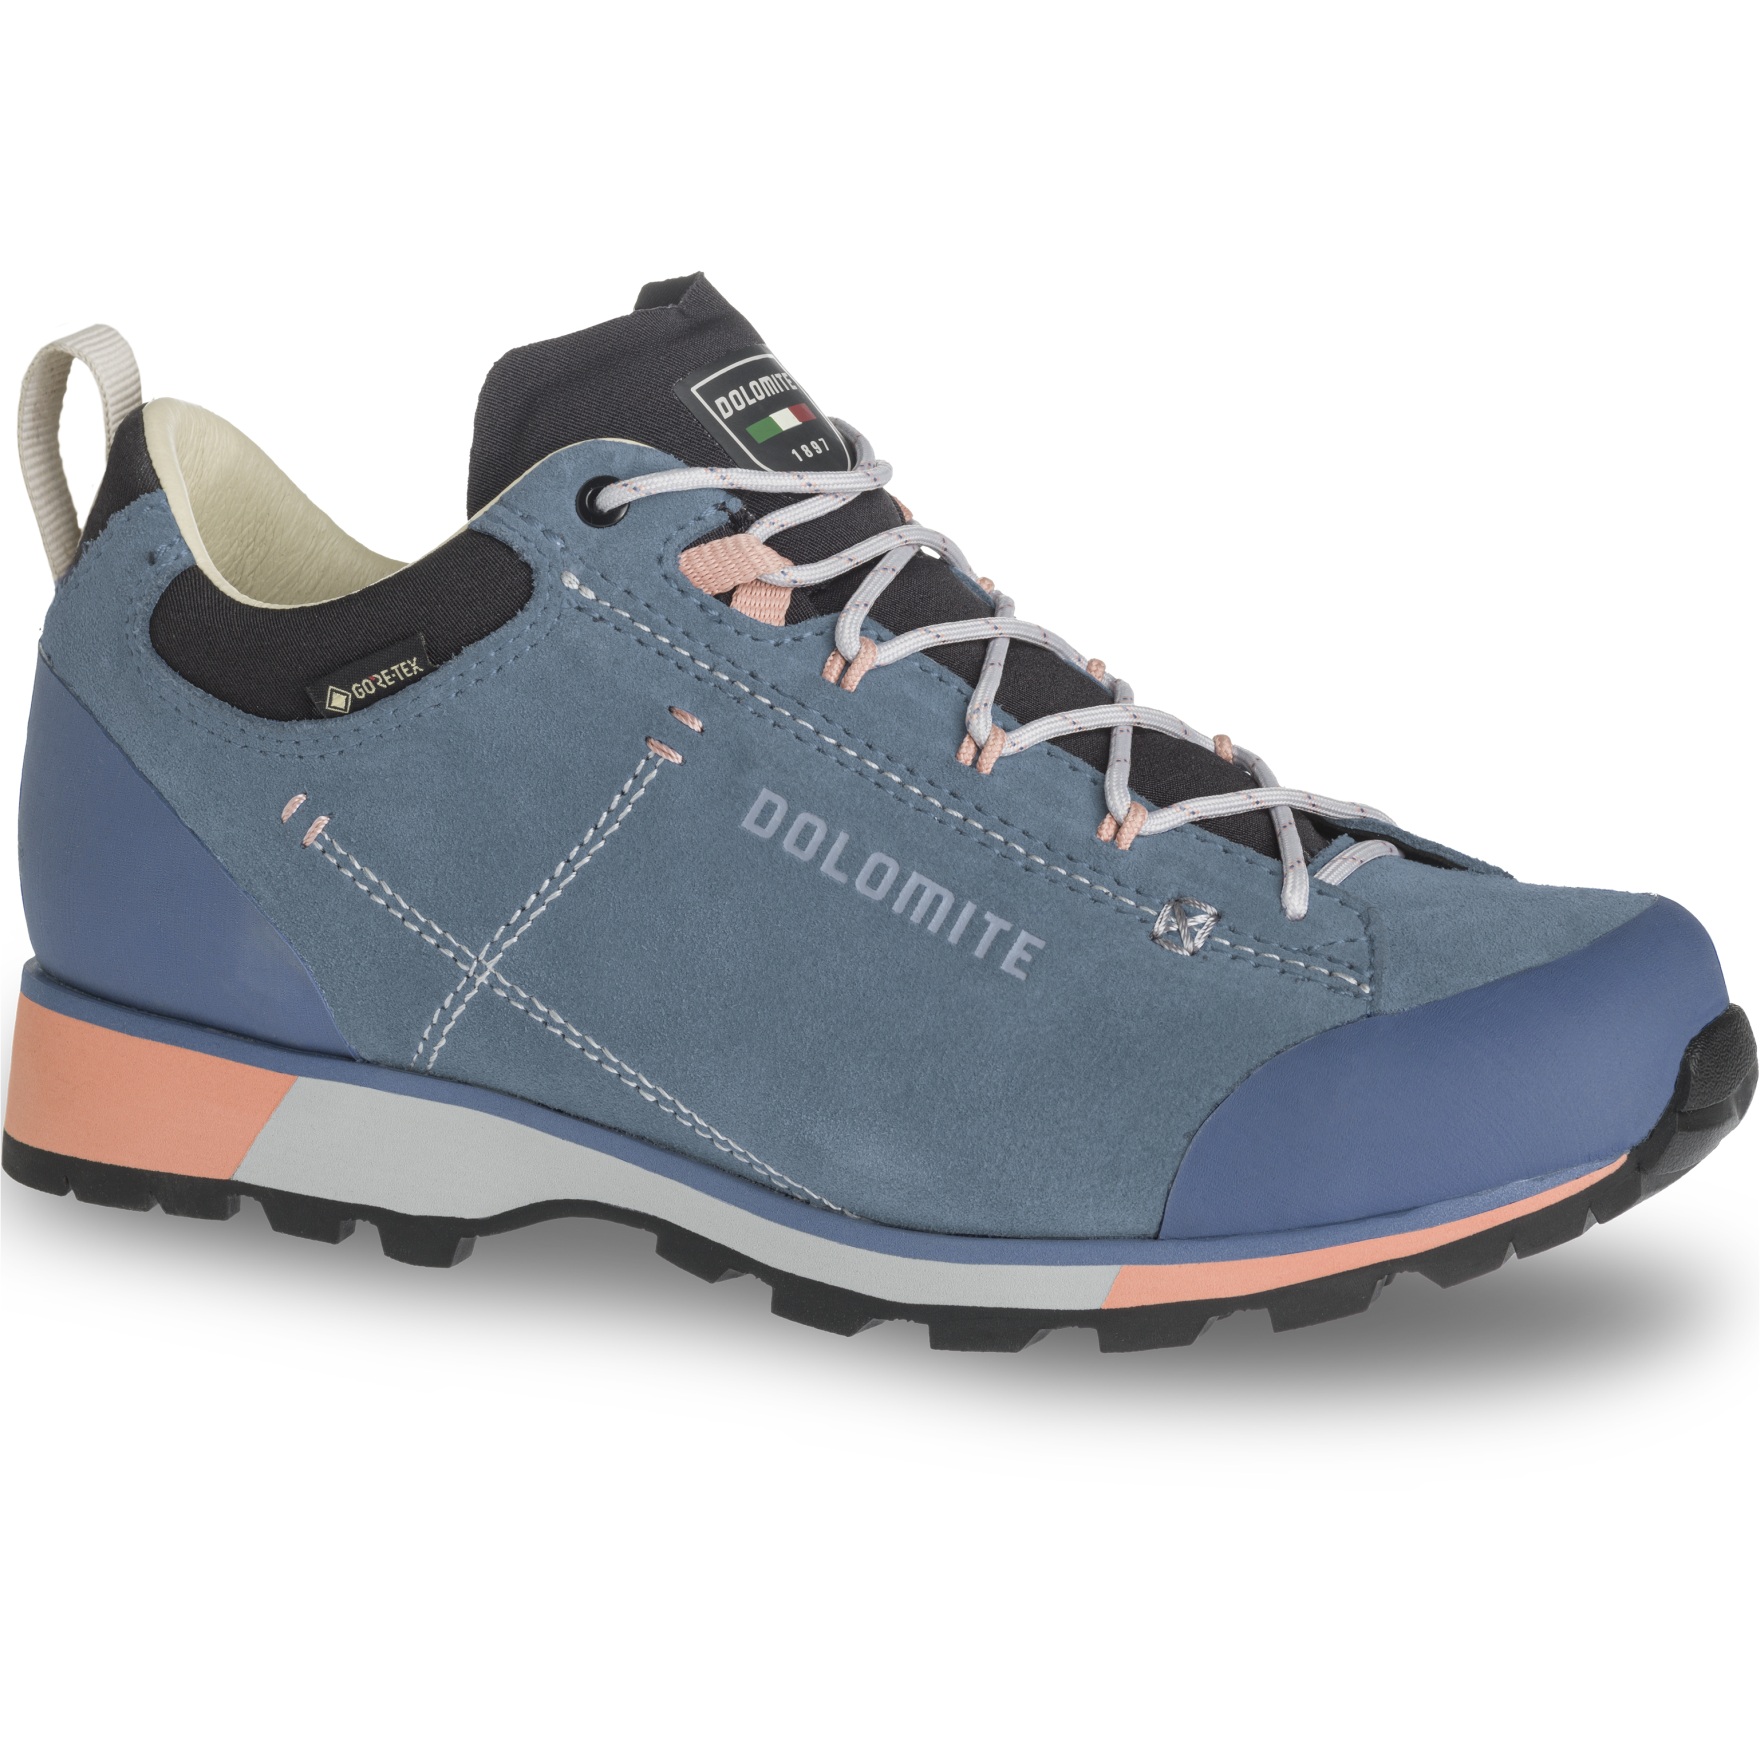 Produktbild von Dolomite 54 Hike Low Evo GORE-TEX Schuhe Damen - denim blue